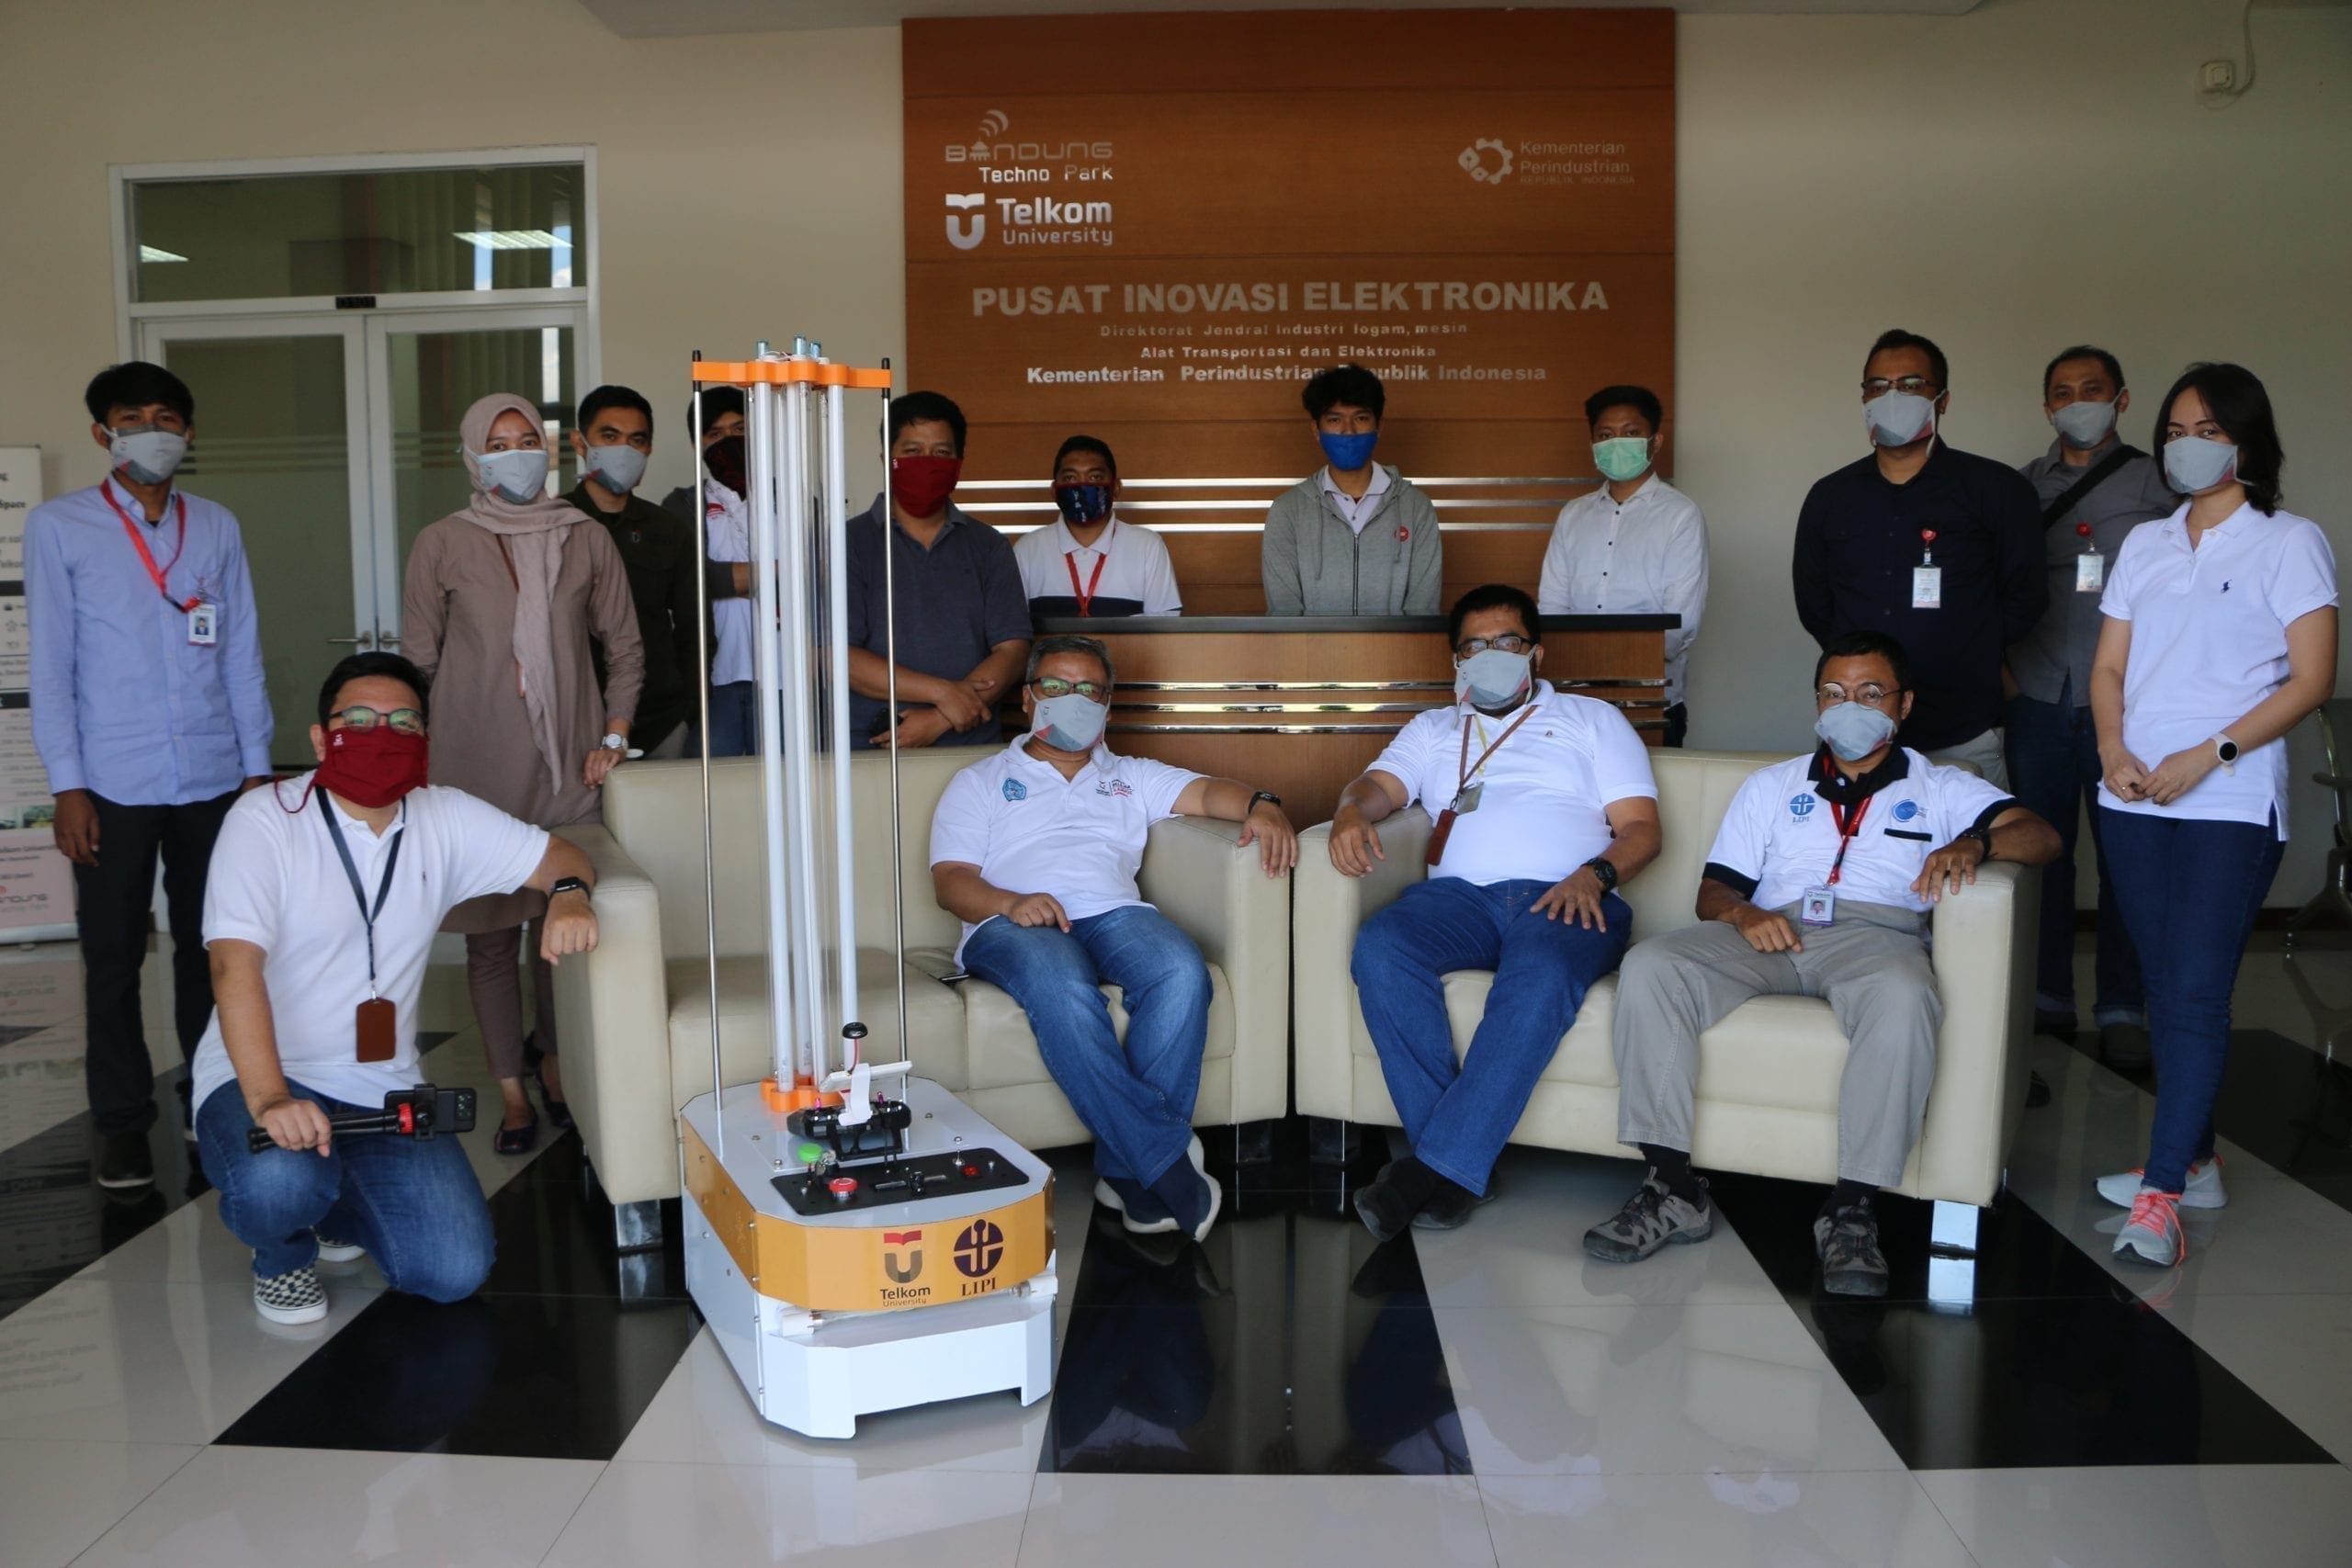 2. Robot AUMR Pertama di Indonesia scaled